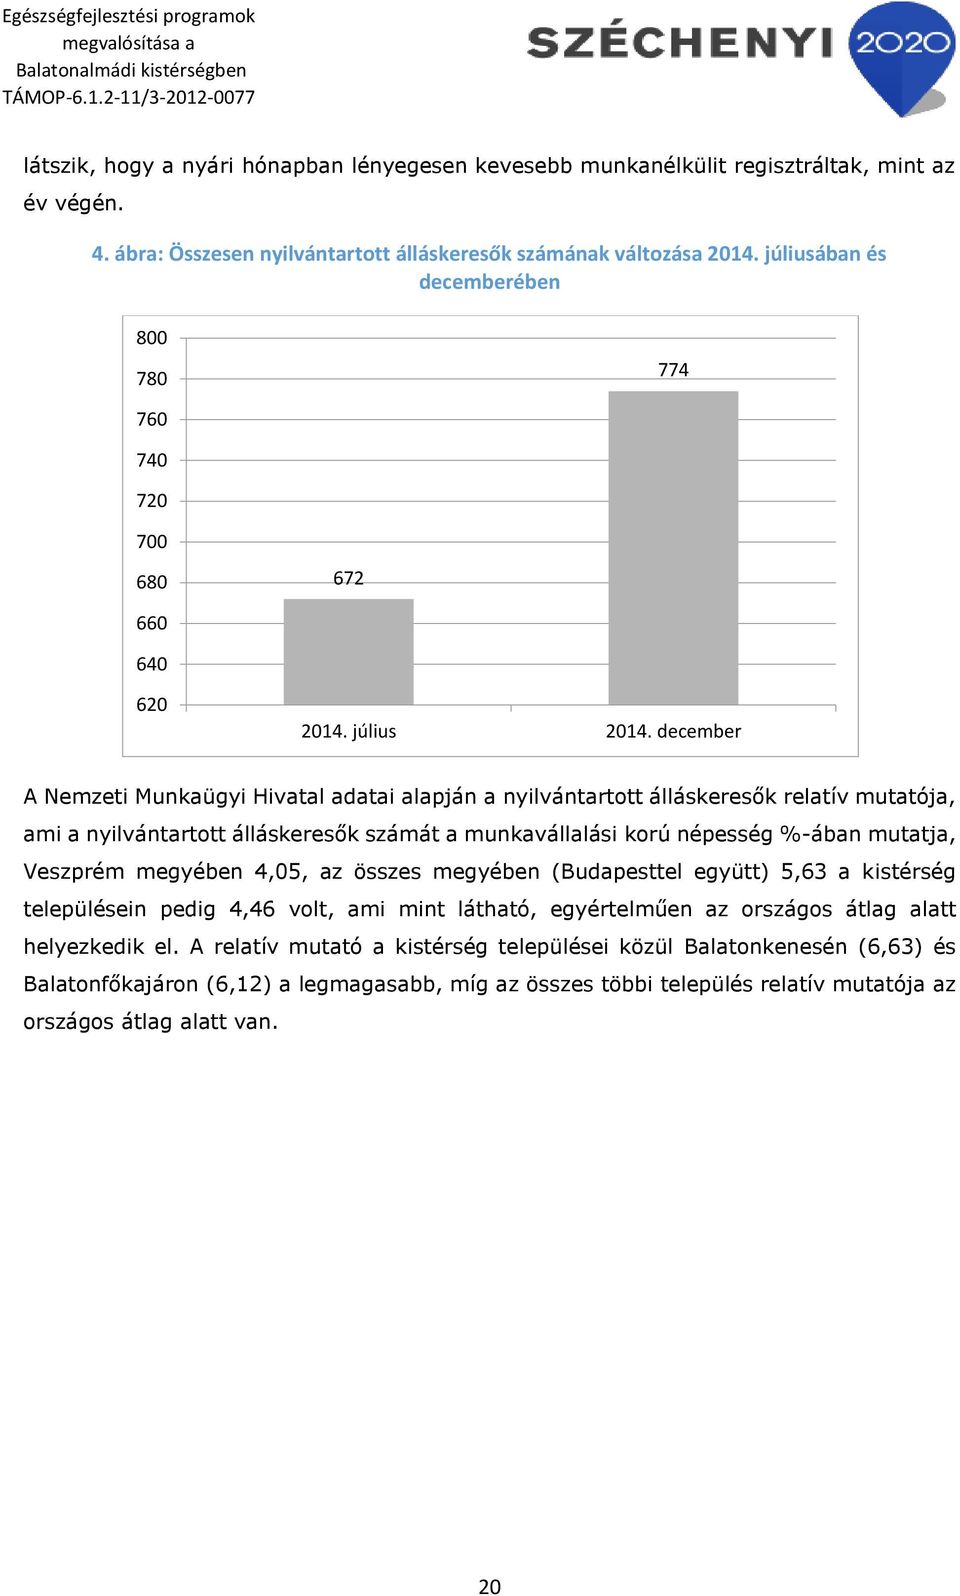 december A Nemzeti Munkaügyi Hivatal adatai alapján a nyilvántartott álláskeresők relatív mutatója, ami a nyilvántartott álláskeresők számát a munkavállalási korú népesség %-ában mutatja, Veszprém